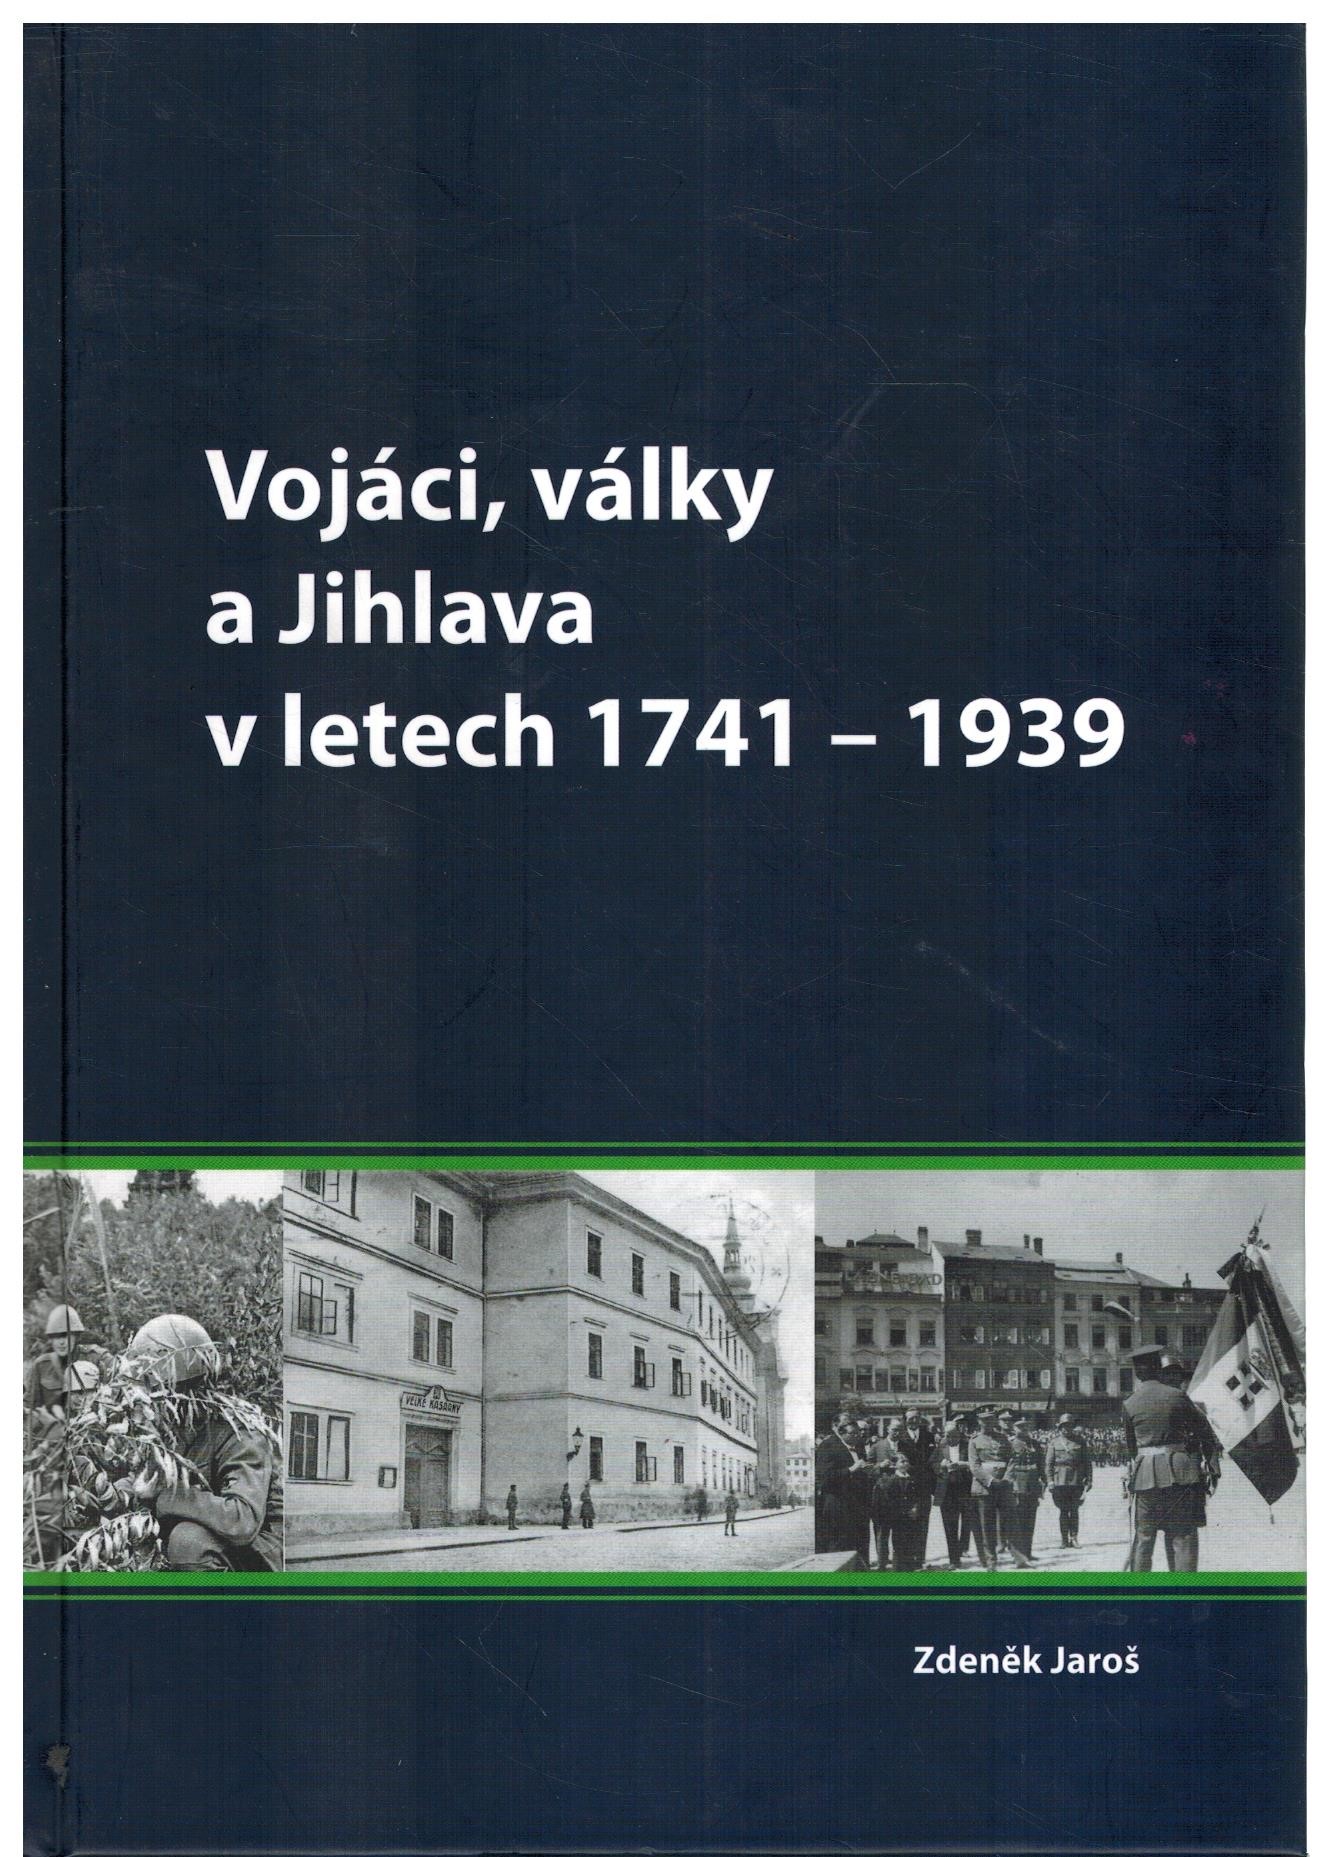 VOJÁCI, VÁLKY A JIHLAVA V LETECH 1741-1939